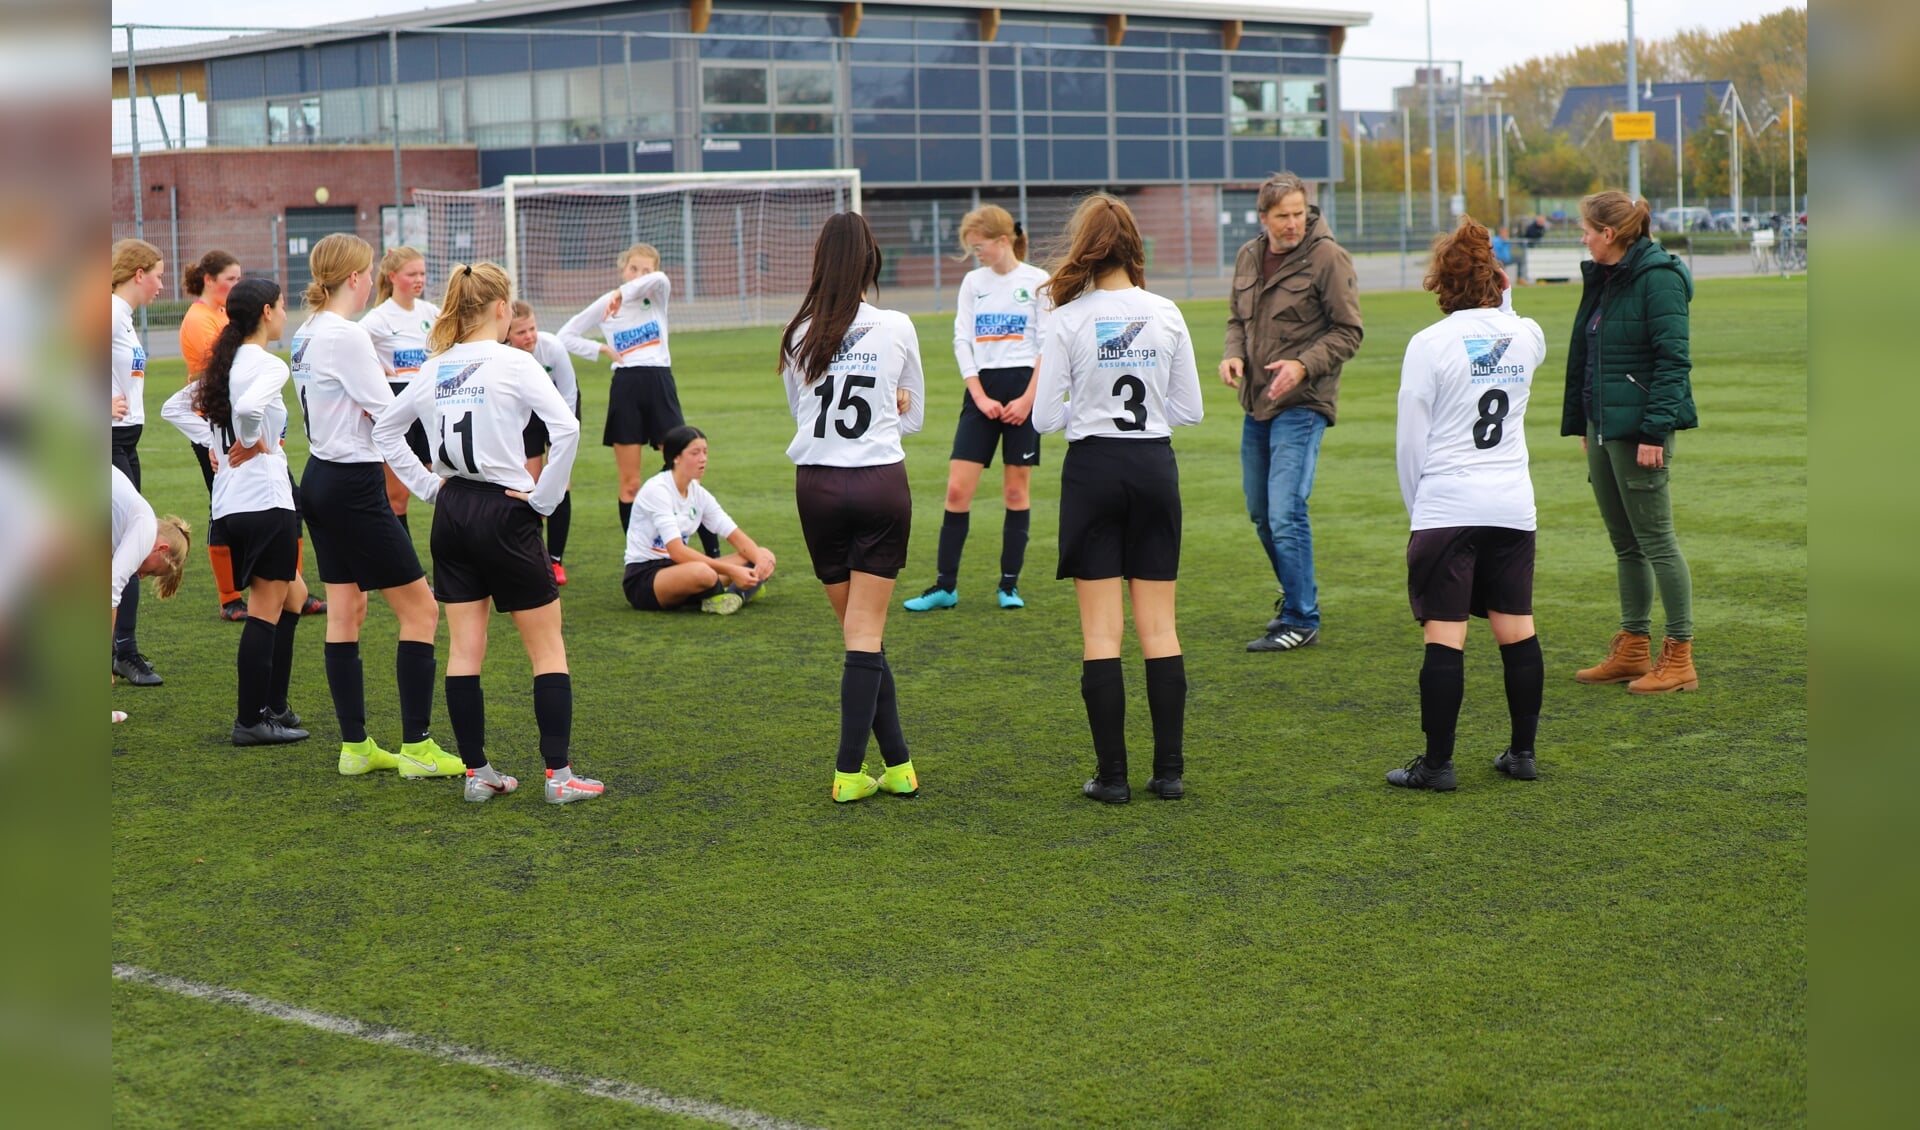 Be Fair meisjes onder 17 jaar maken zich klaar voor een wedstrijd tegen de jongens van de club.